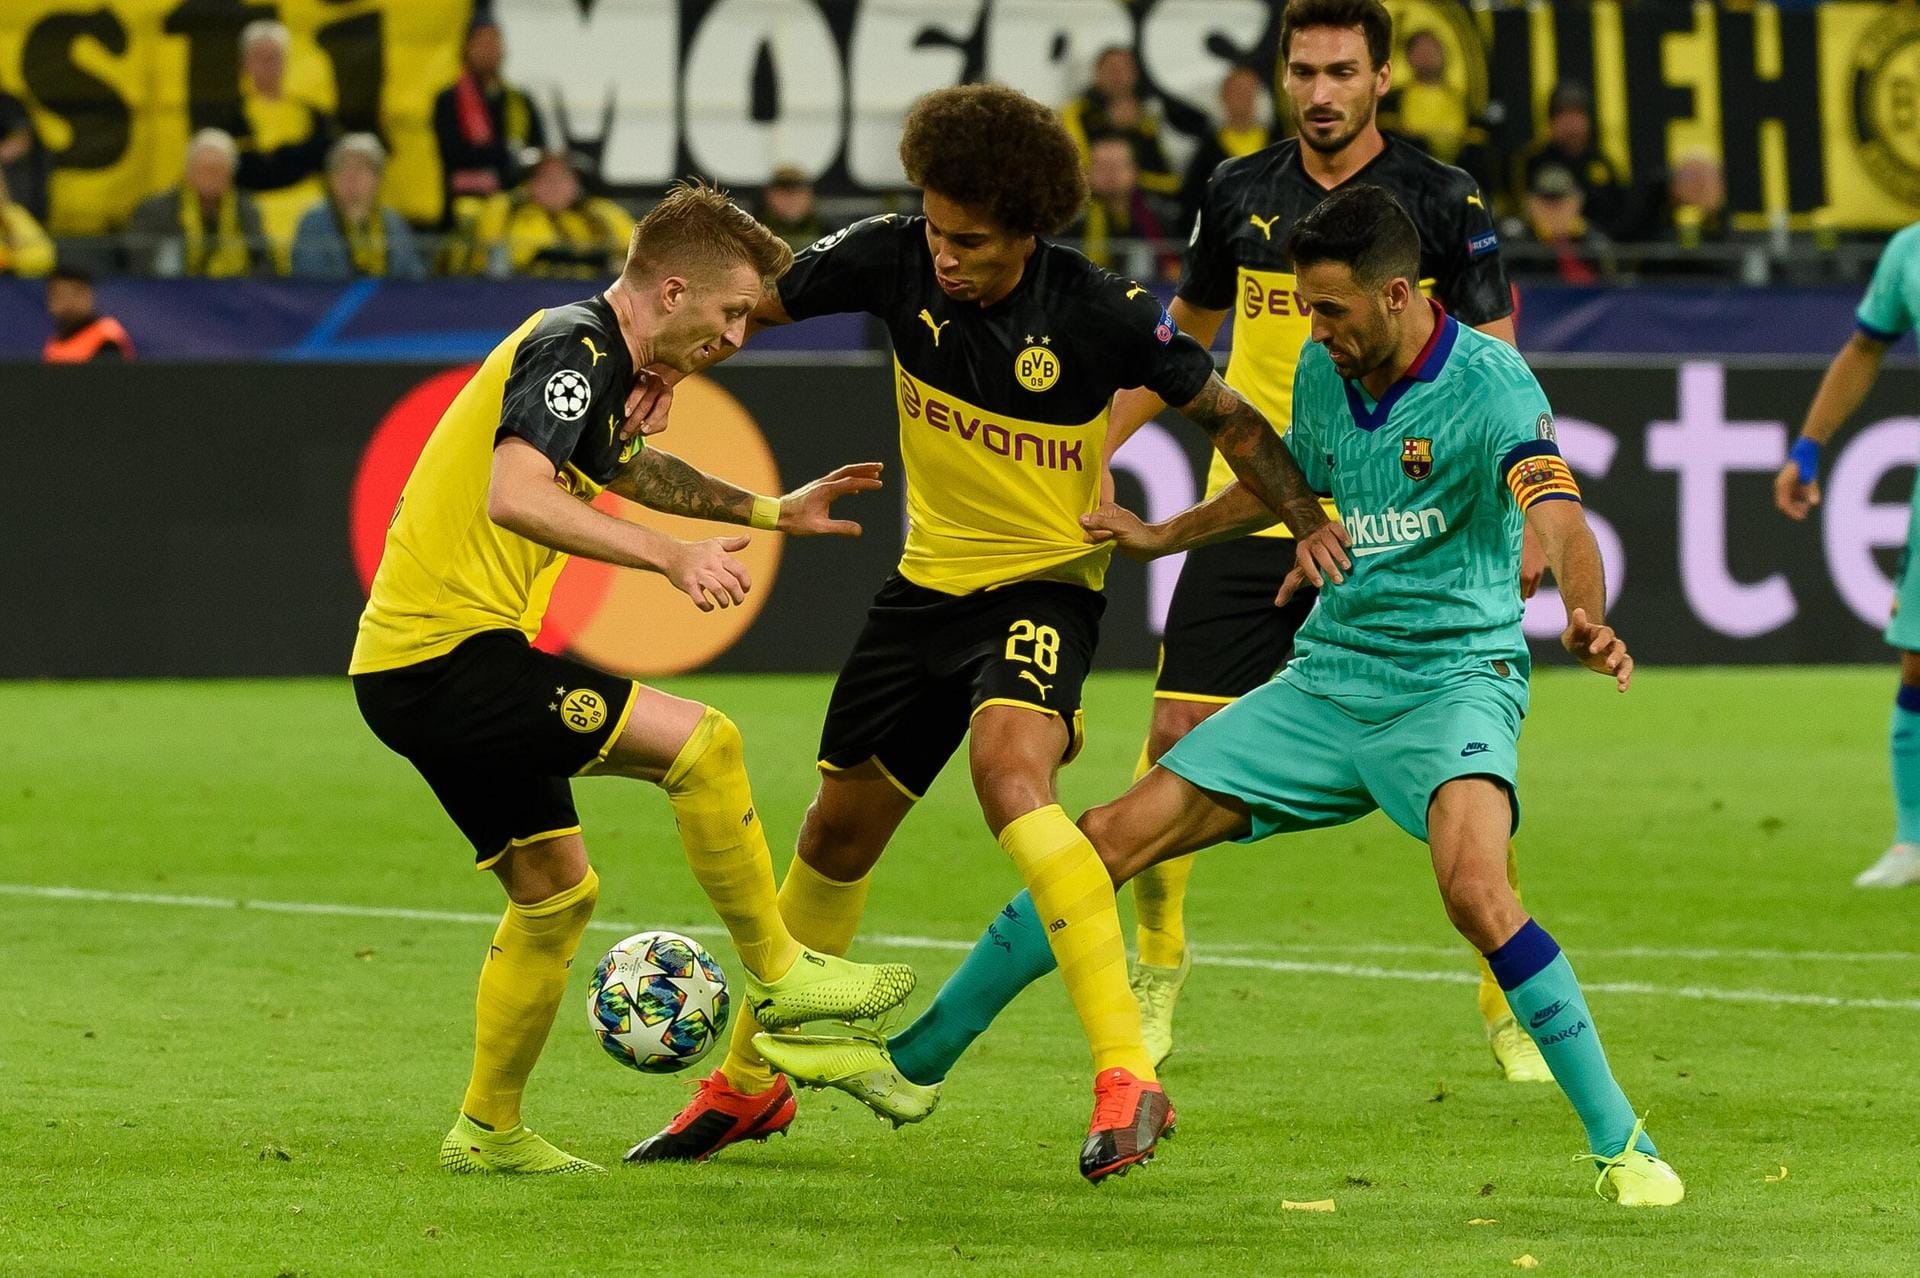 Borussia Dortmund ist mit einem 0:0 gegen den FC Barcelona in die neue Champions-League-Saison gestartet. Ein Dortmunder ragte dabei besonders heraus. t-online.de präsentiert die Noten der BVB-Stars zum Durchklicken.